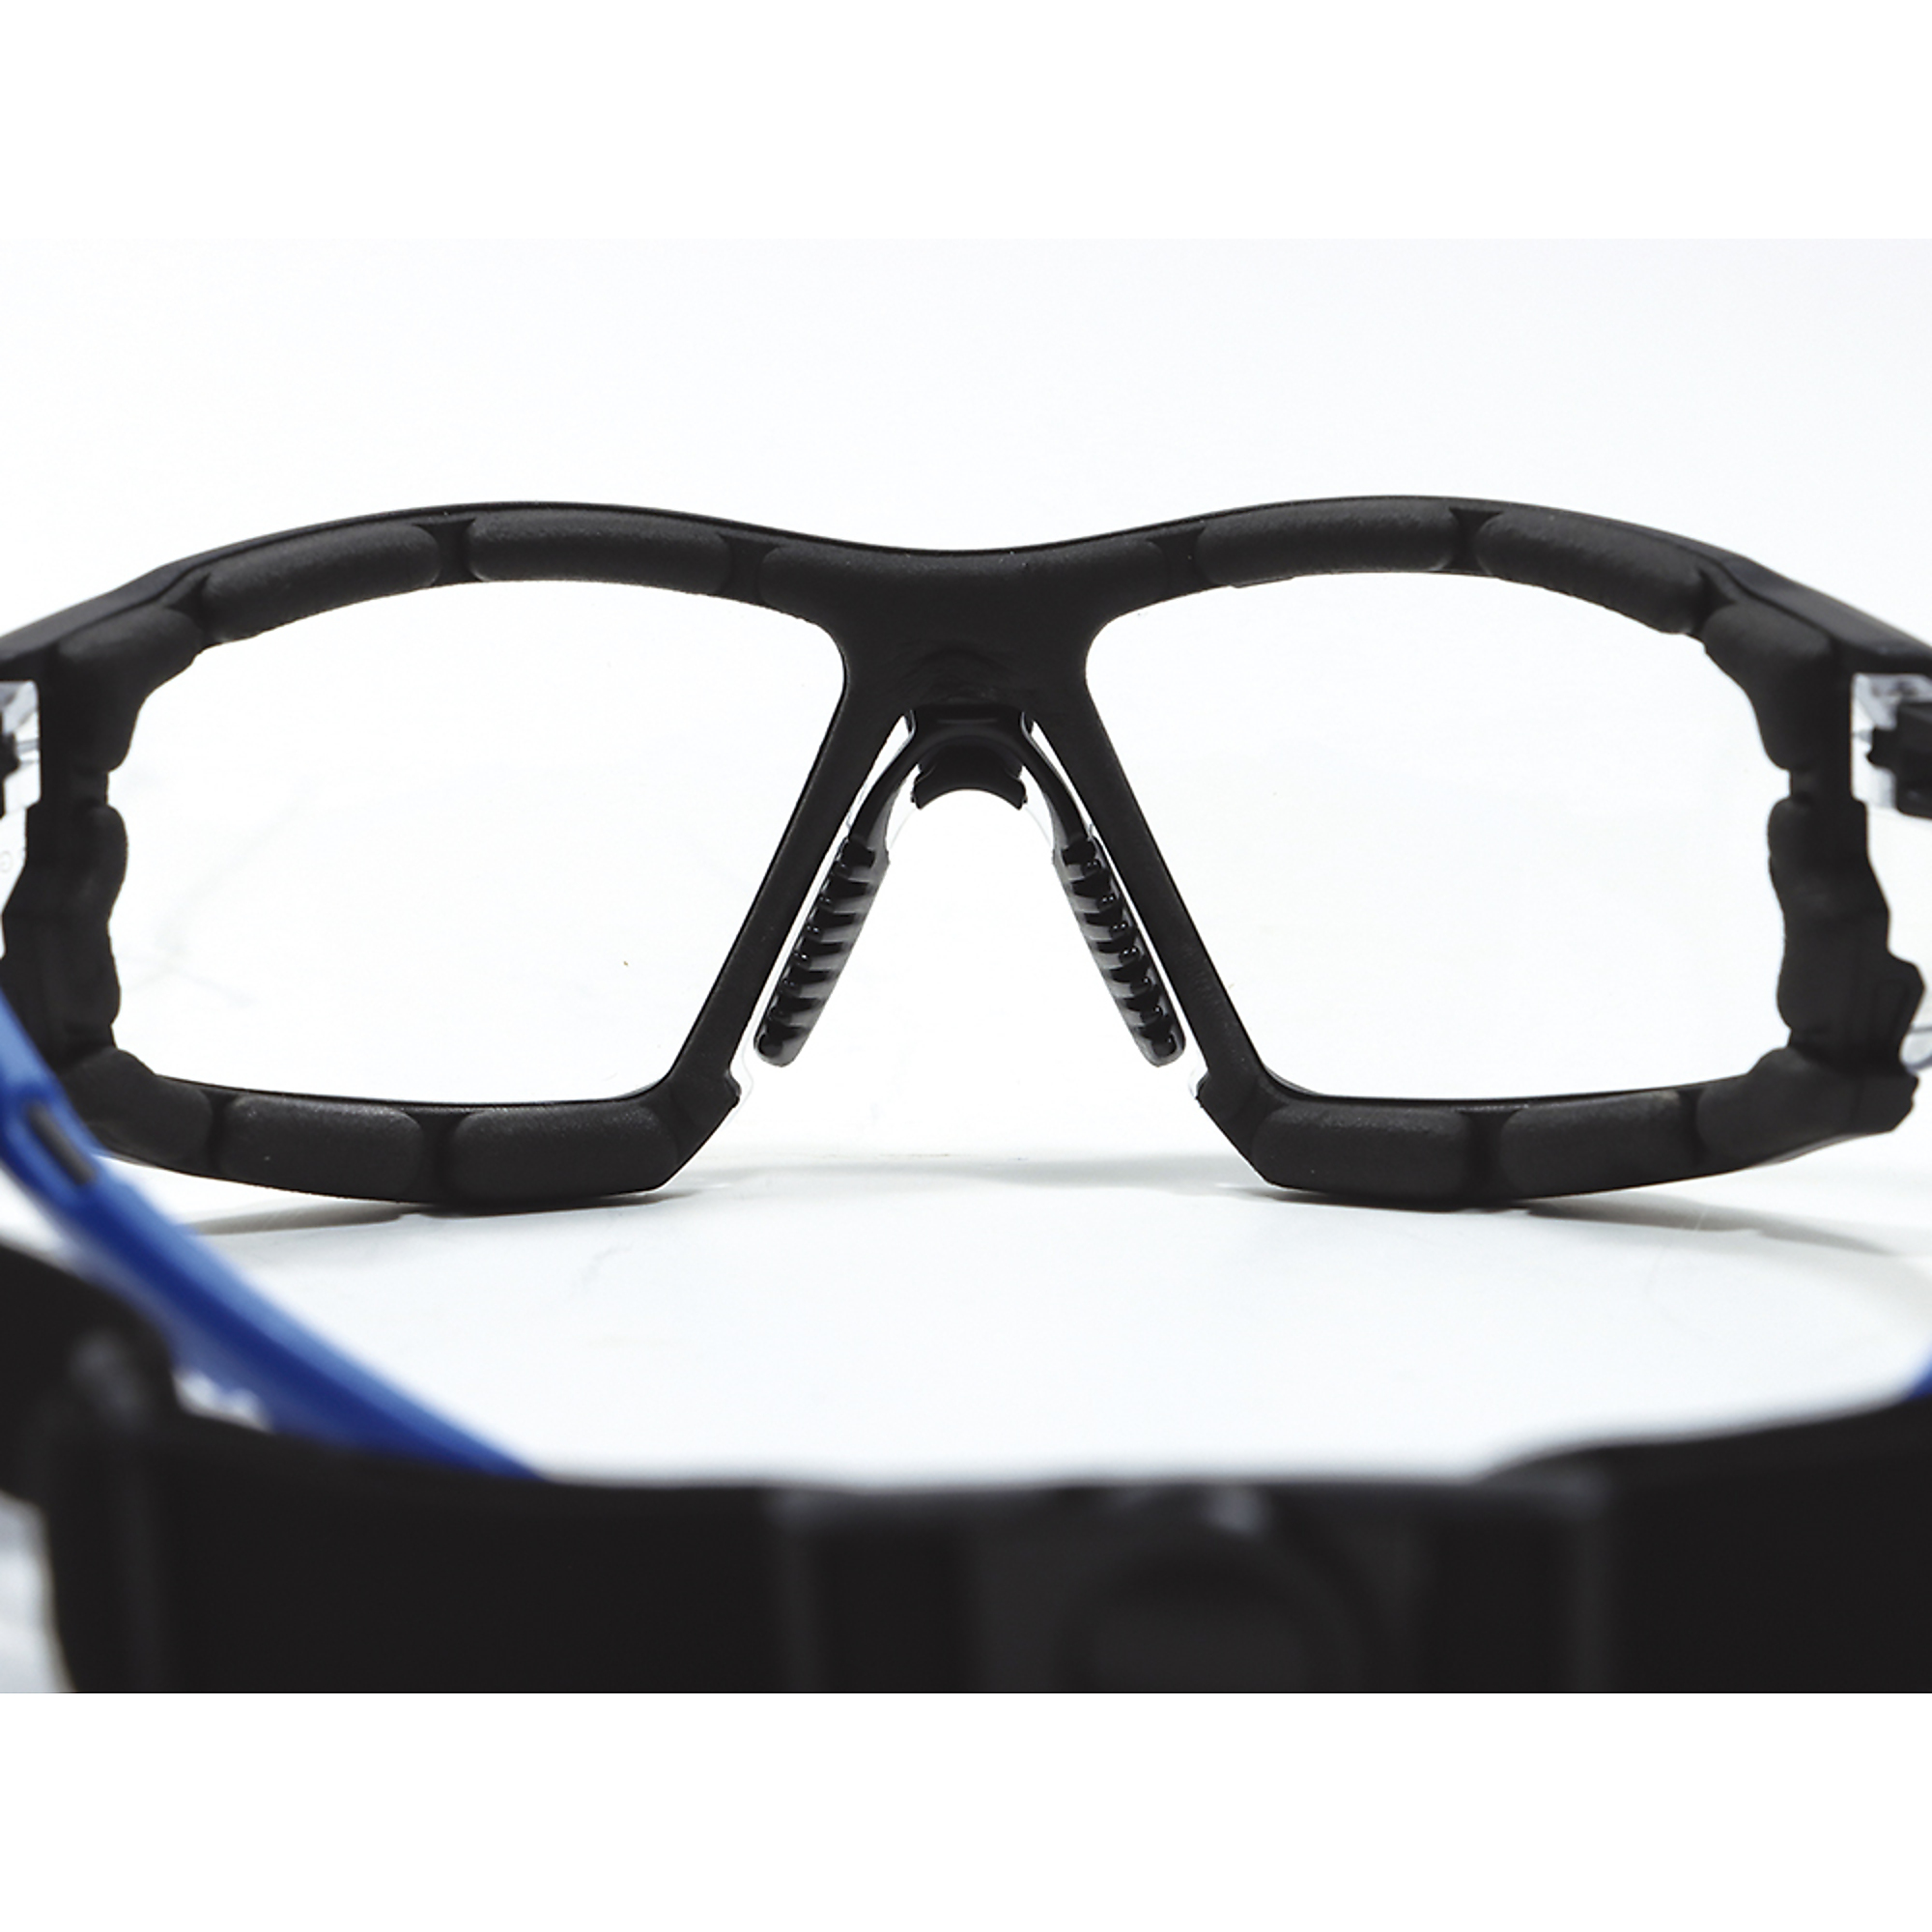 General Electric, Black/Blue Frame Safety Glasses w/Clear Lenses, Frame  Color Black, Lens Color Clear, ANSI Z87 Compliant, Model# GE105CAF